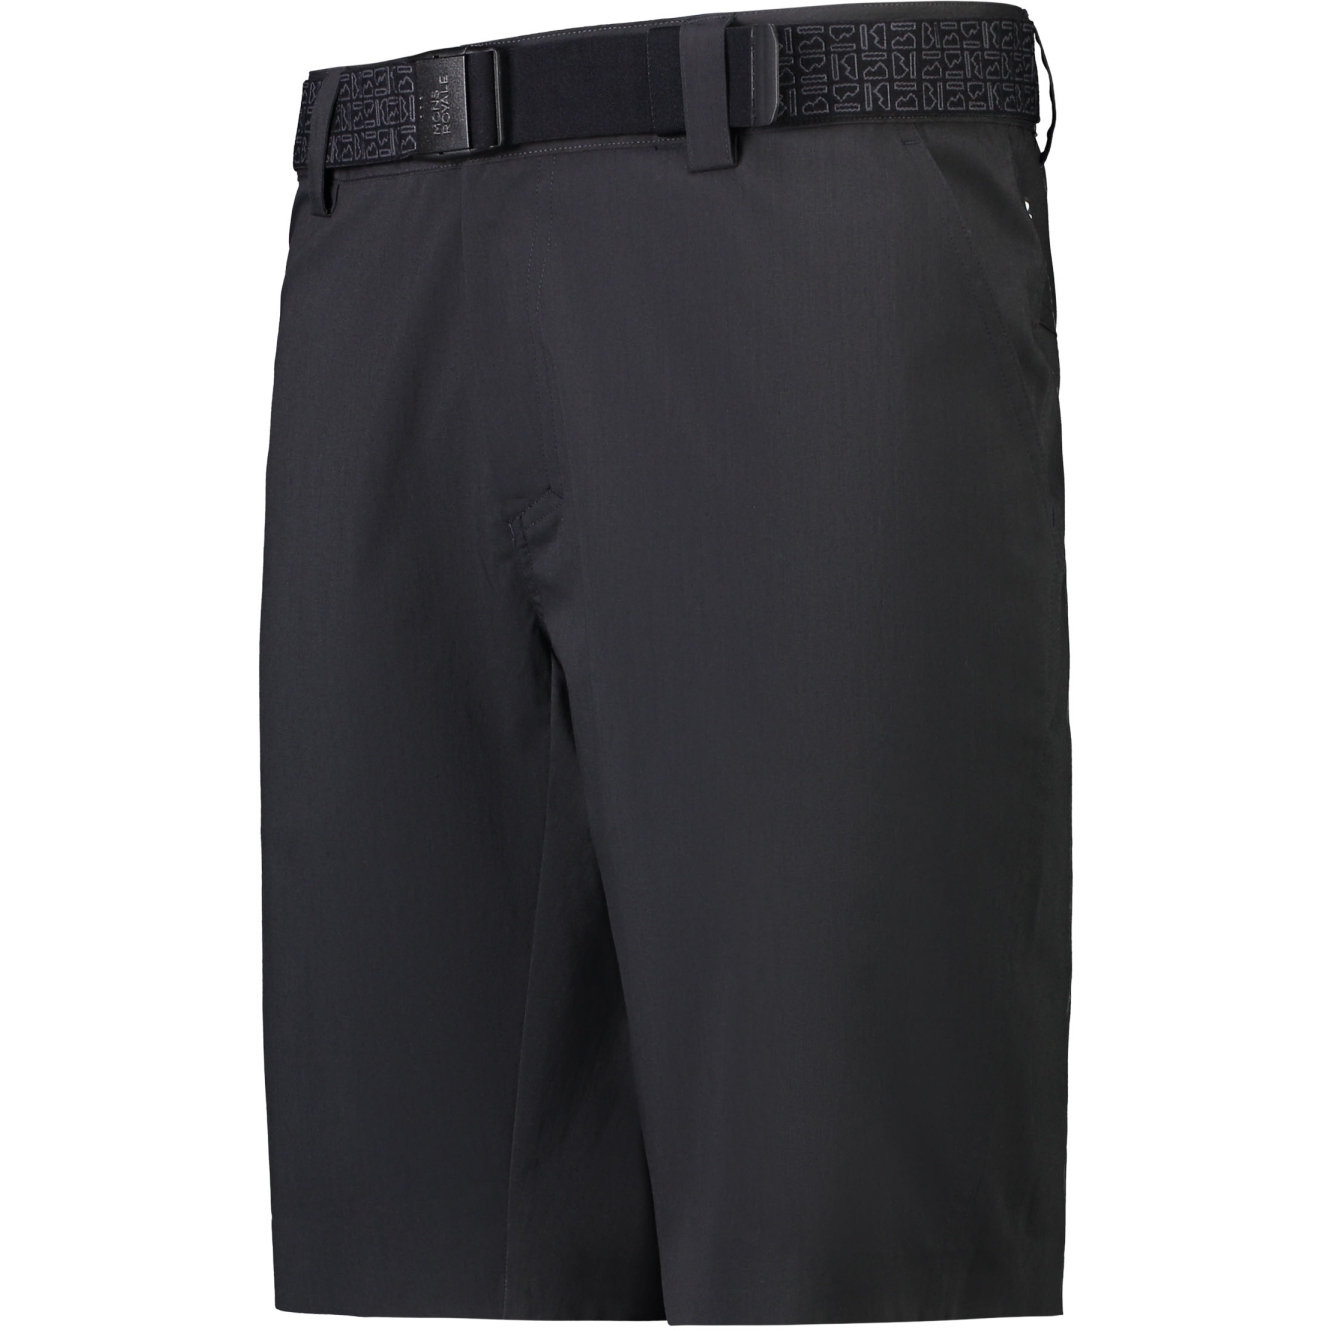 Produktbild von Mons Royale Drift Shorts - schwarz